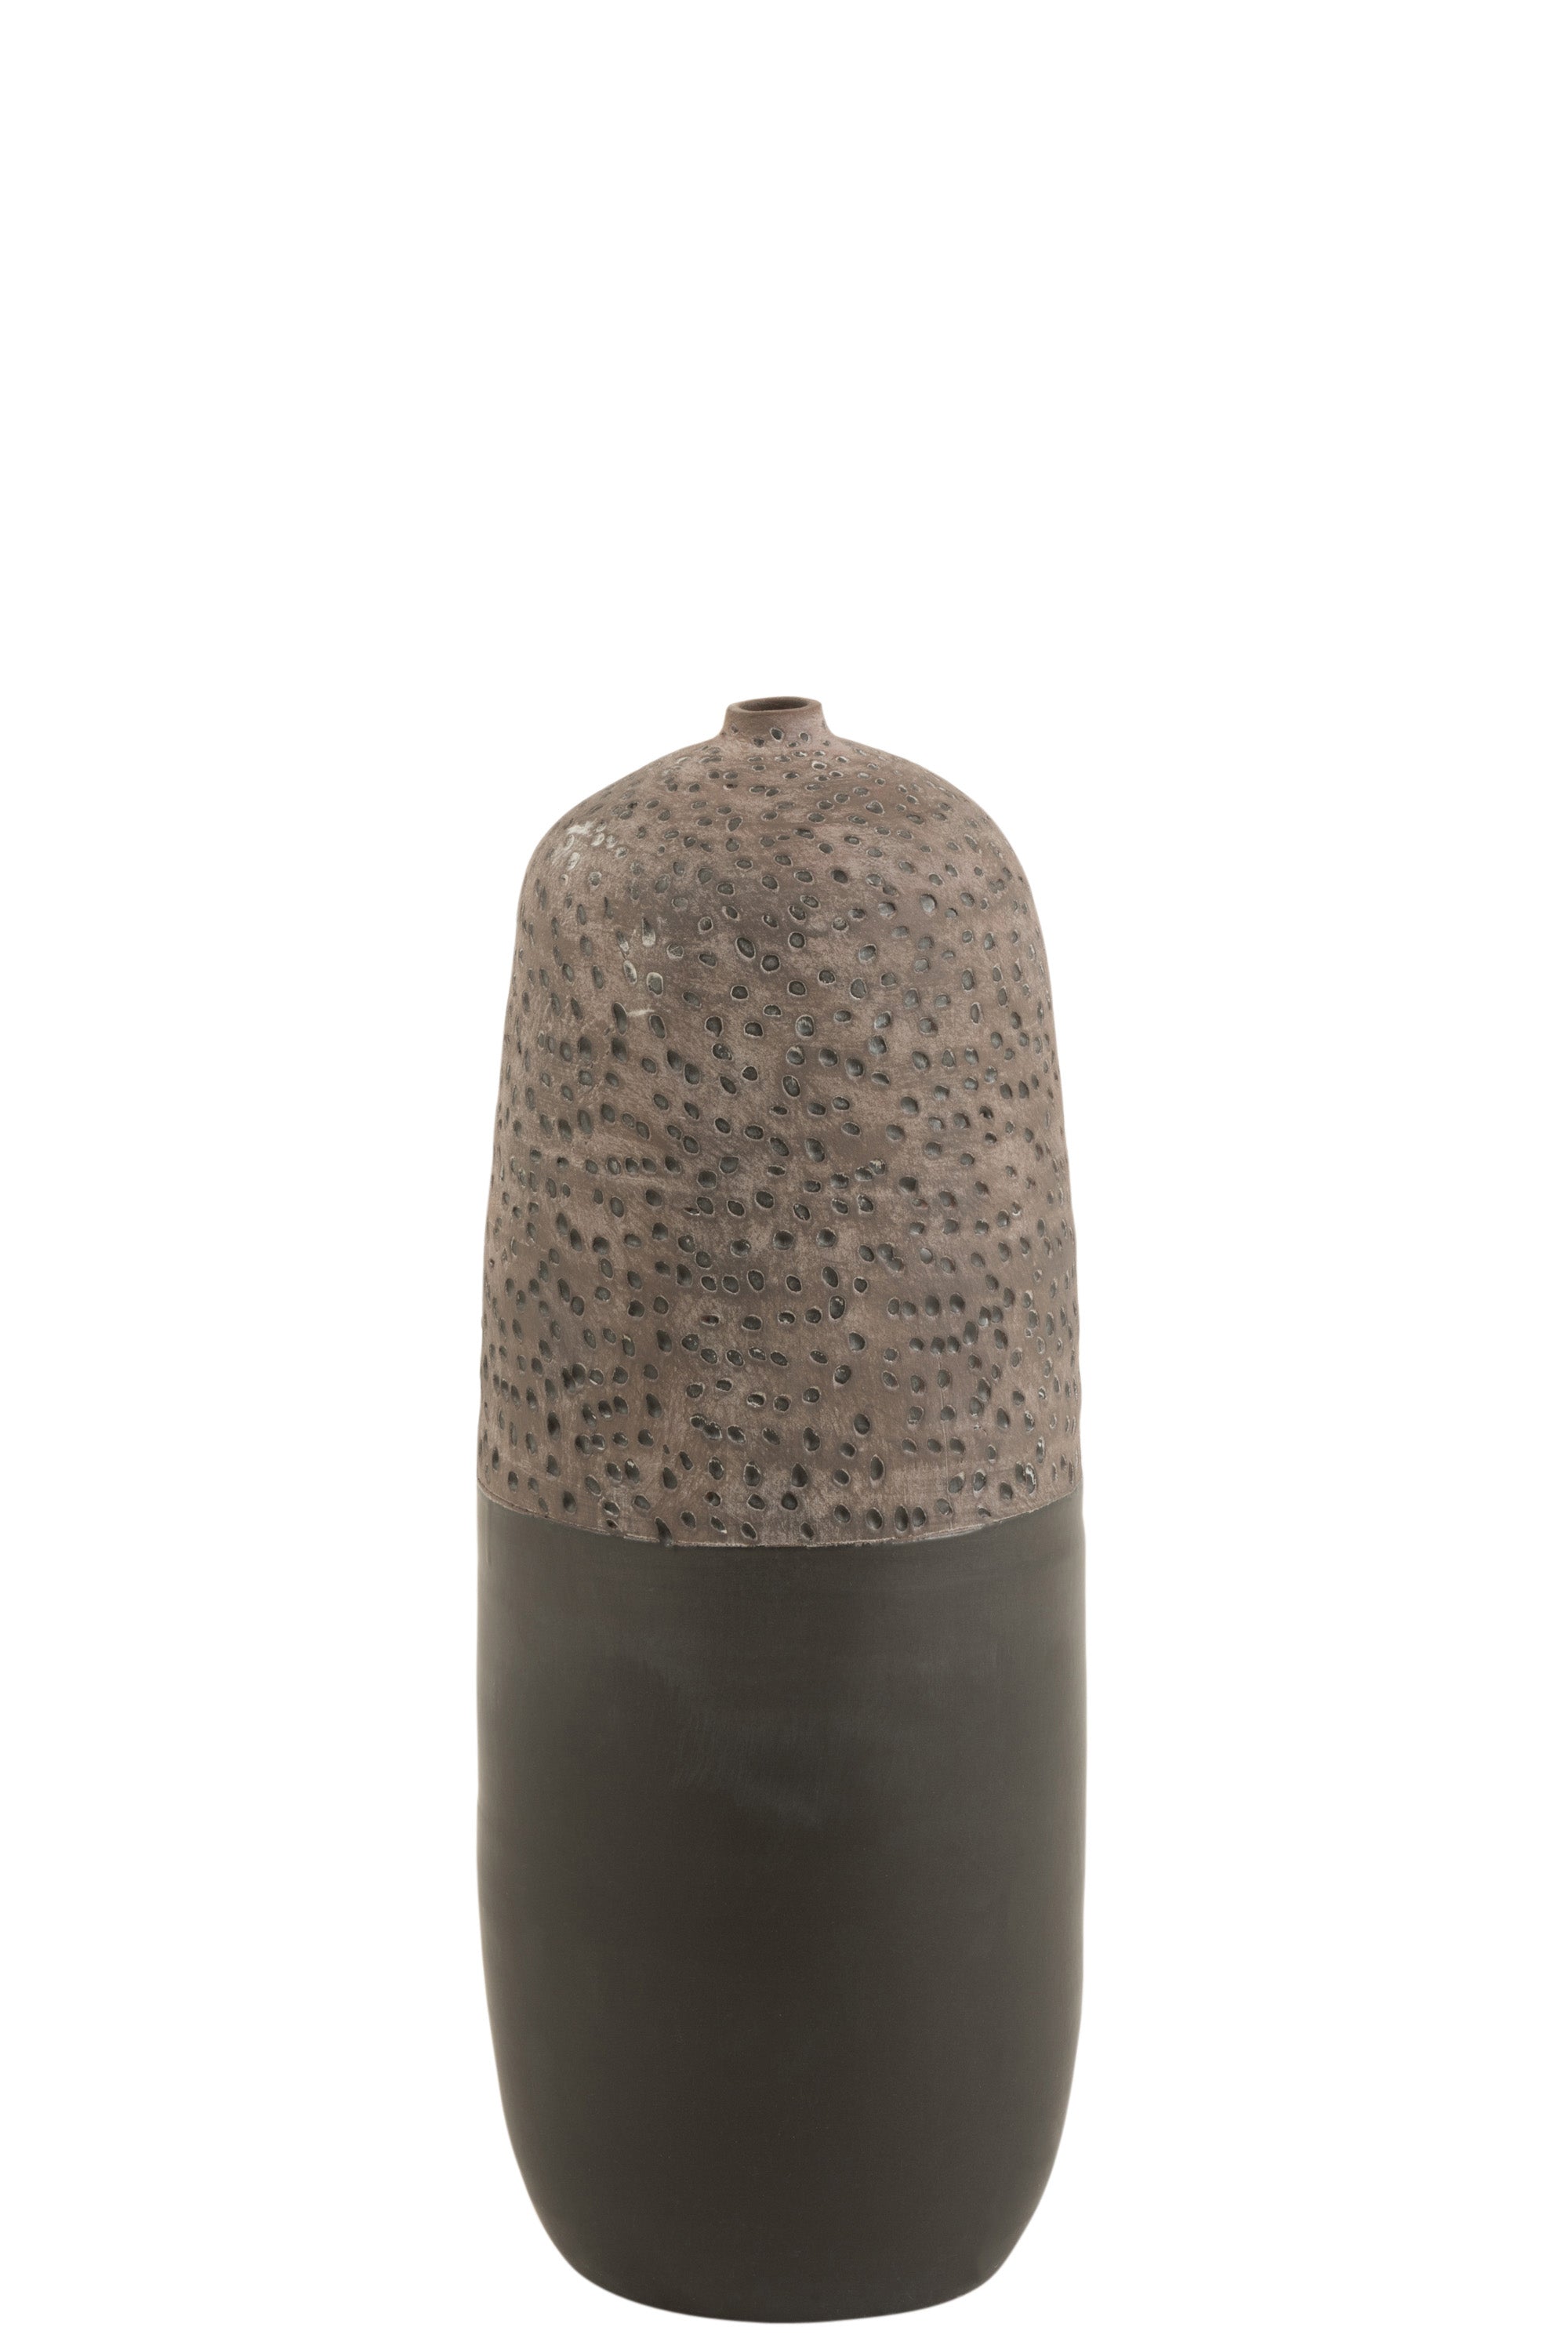 Hohe Vase aus Keramik mit extrem schmaler Öffnung; die untere Hälfte in mattem Schwarz gehalten, die obere Hälfte braun mit punktartigen Vertiefungen.